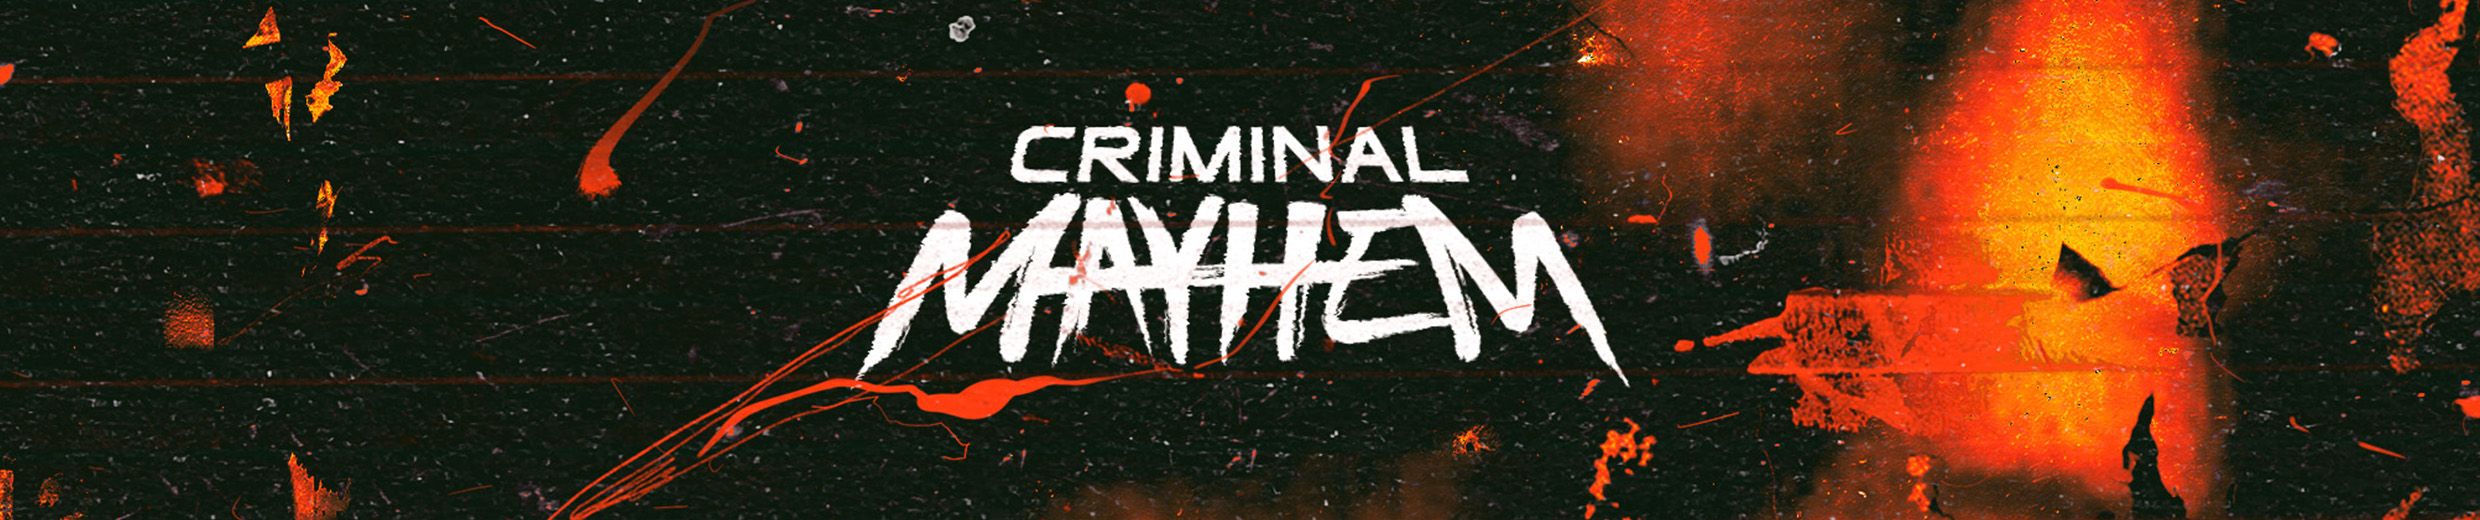 Listen to Mayhem - Carnage (ft. Dead) by MACHETECHAINSAW in mayhem playlist  online for free on SoundCloud